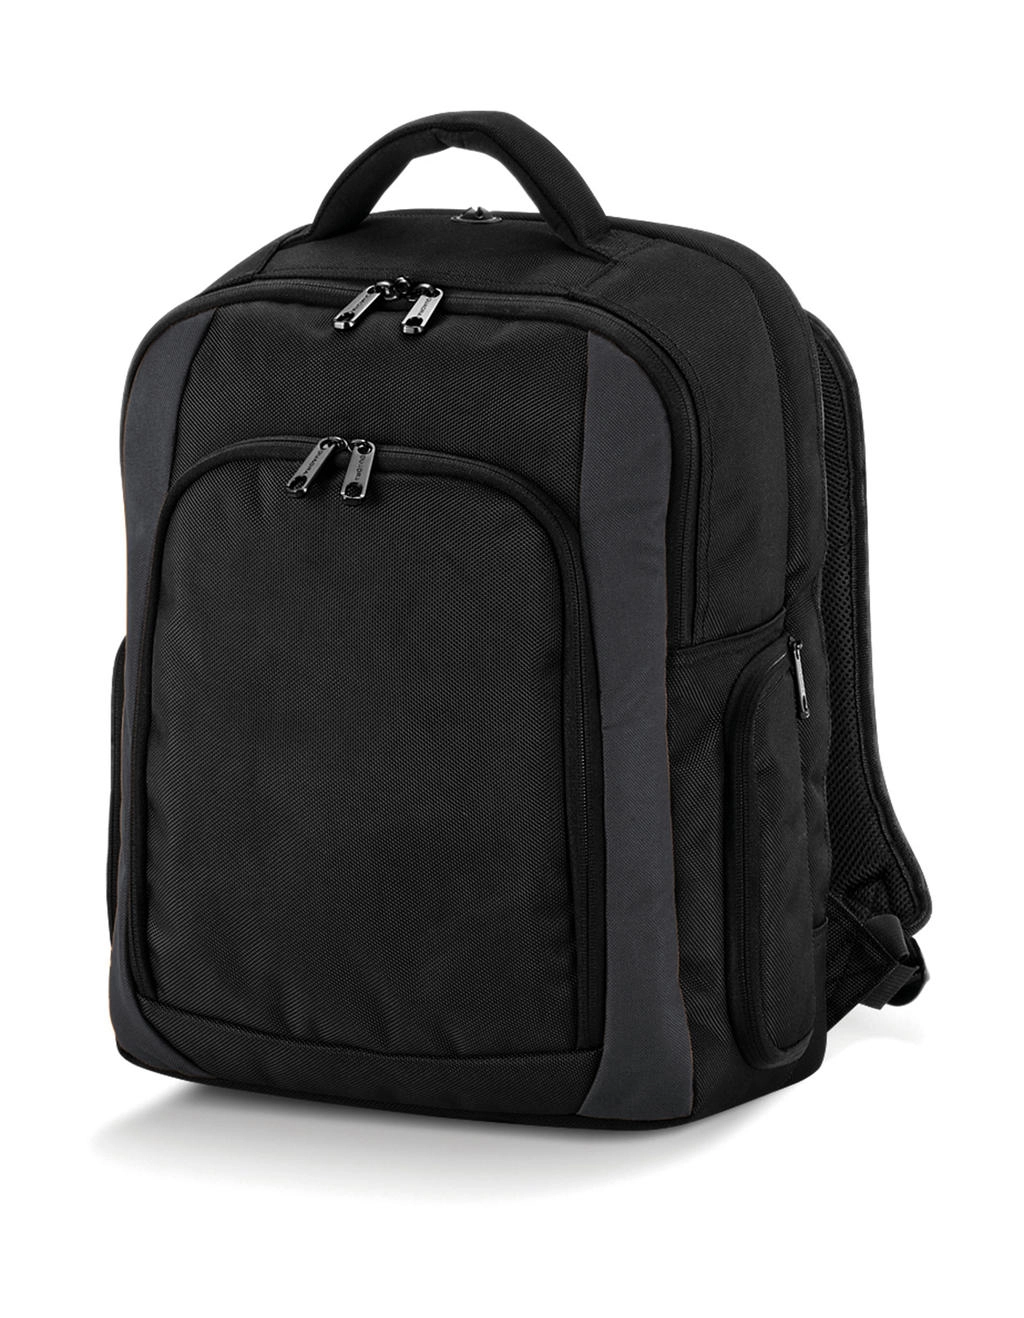 Tungsten™ Laptop Backpack zum Besticken und Bedrucken in der Farbe Black/Dark Graphite mit Ihren Logo, Schriftzug oder Motiv.